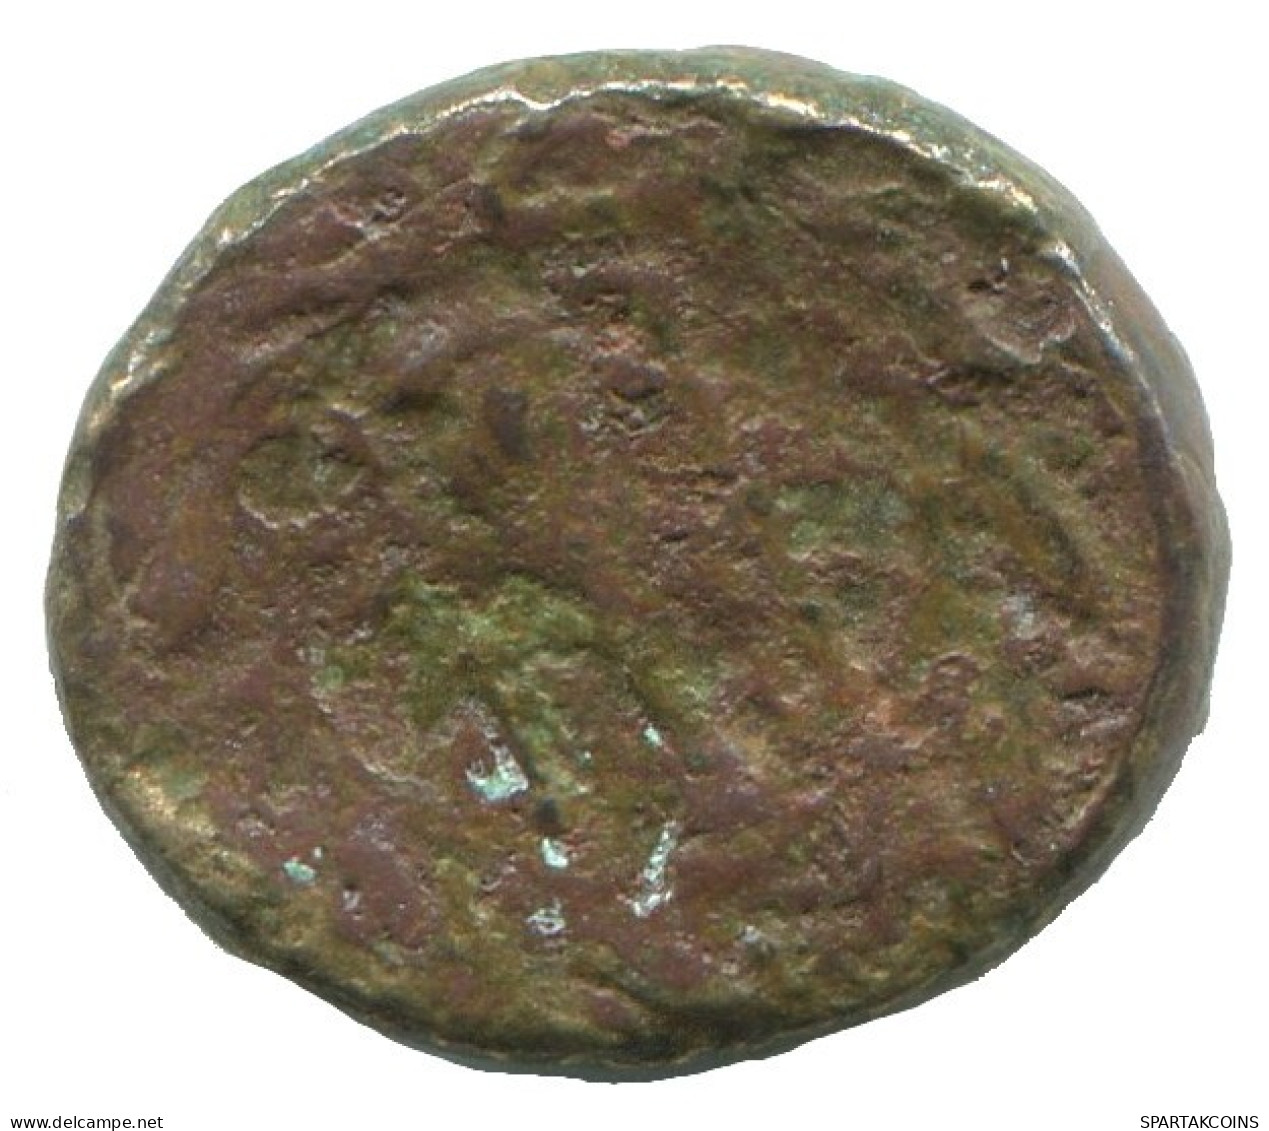 TROAS BIRYTIS KABEIROS CLUB PILEUS STAR 1.5g/13mm #NNN1198.9.U.A - Griechische Münzen